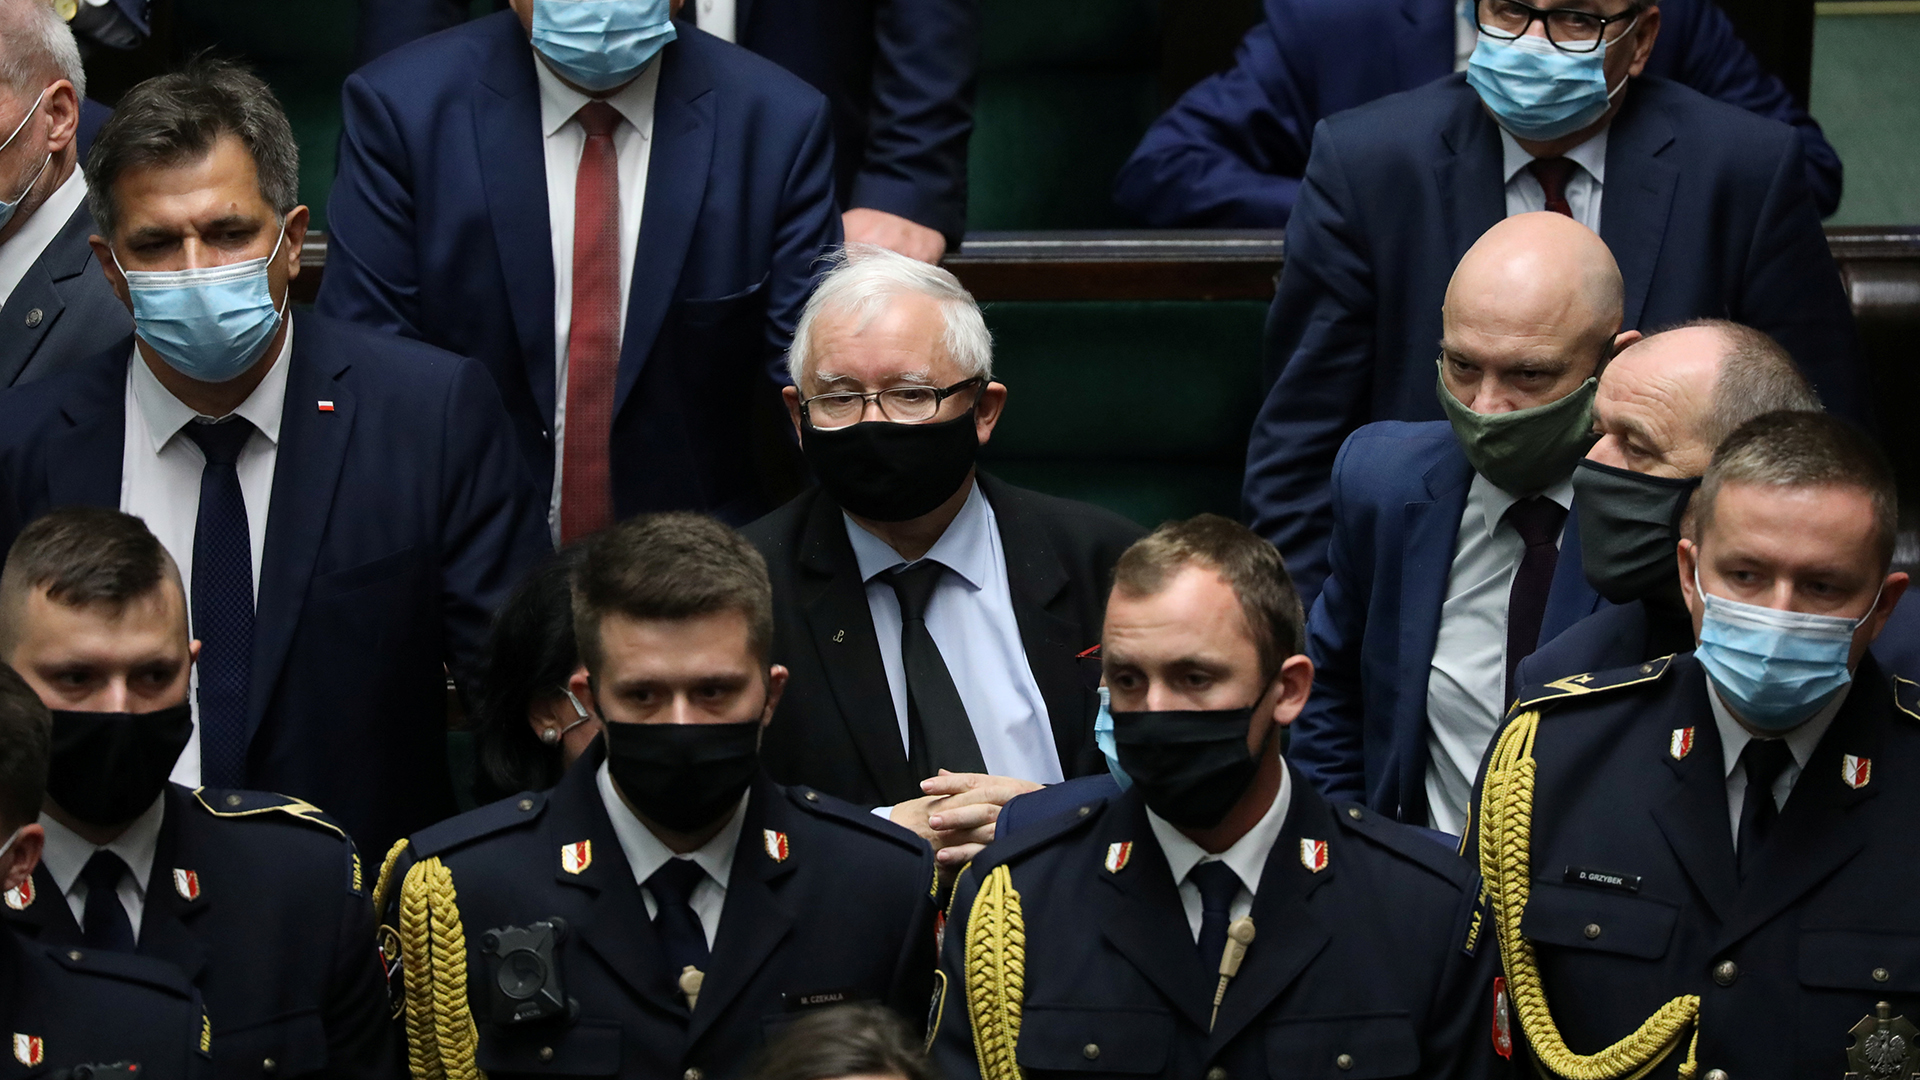 Jaroslaw Kaczynski | via REUTERS